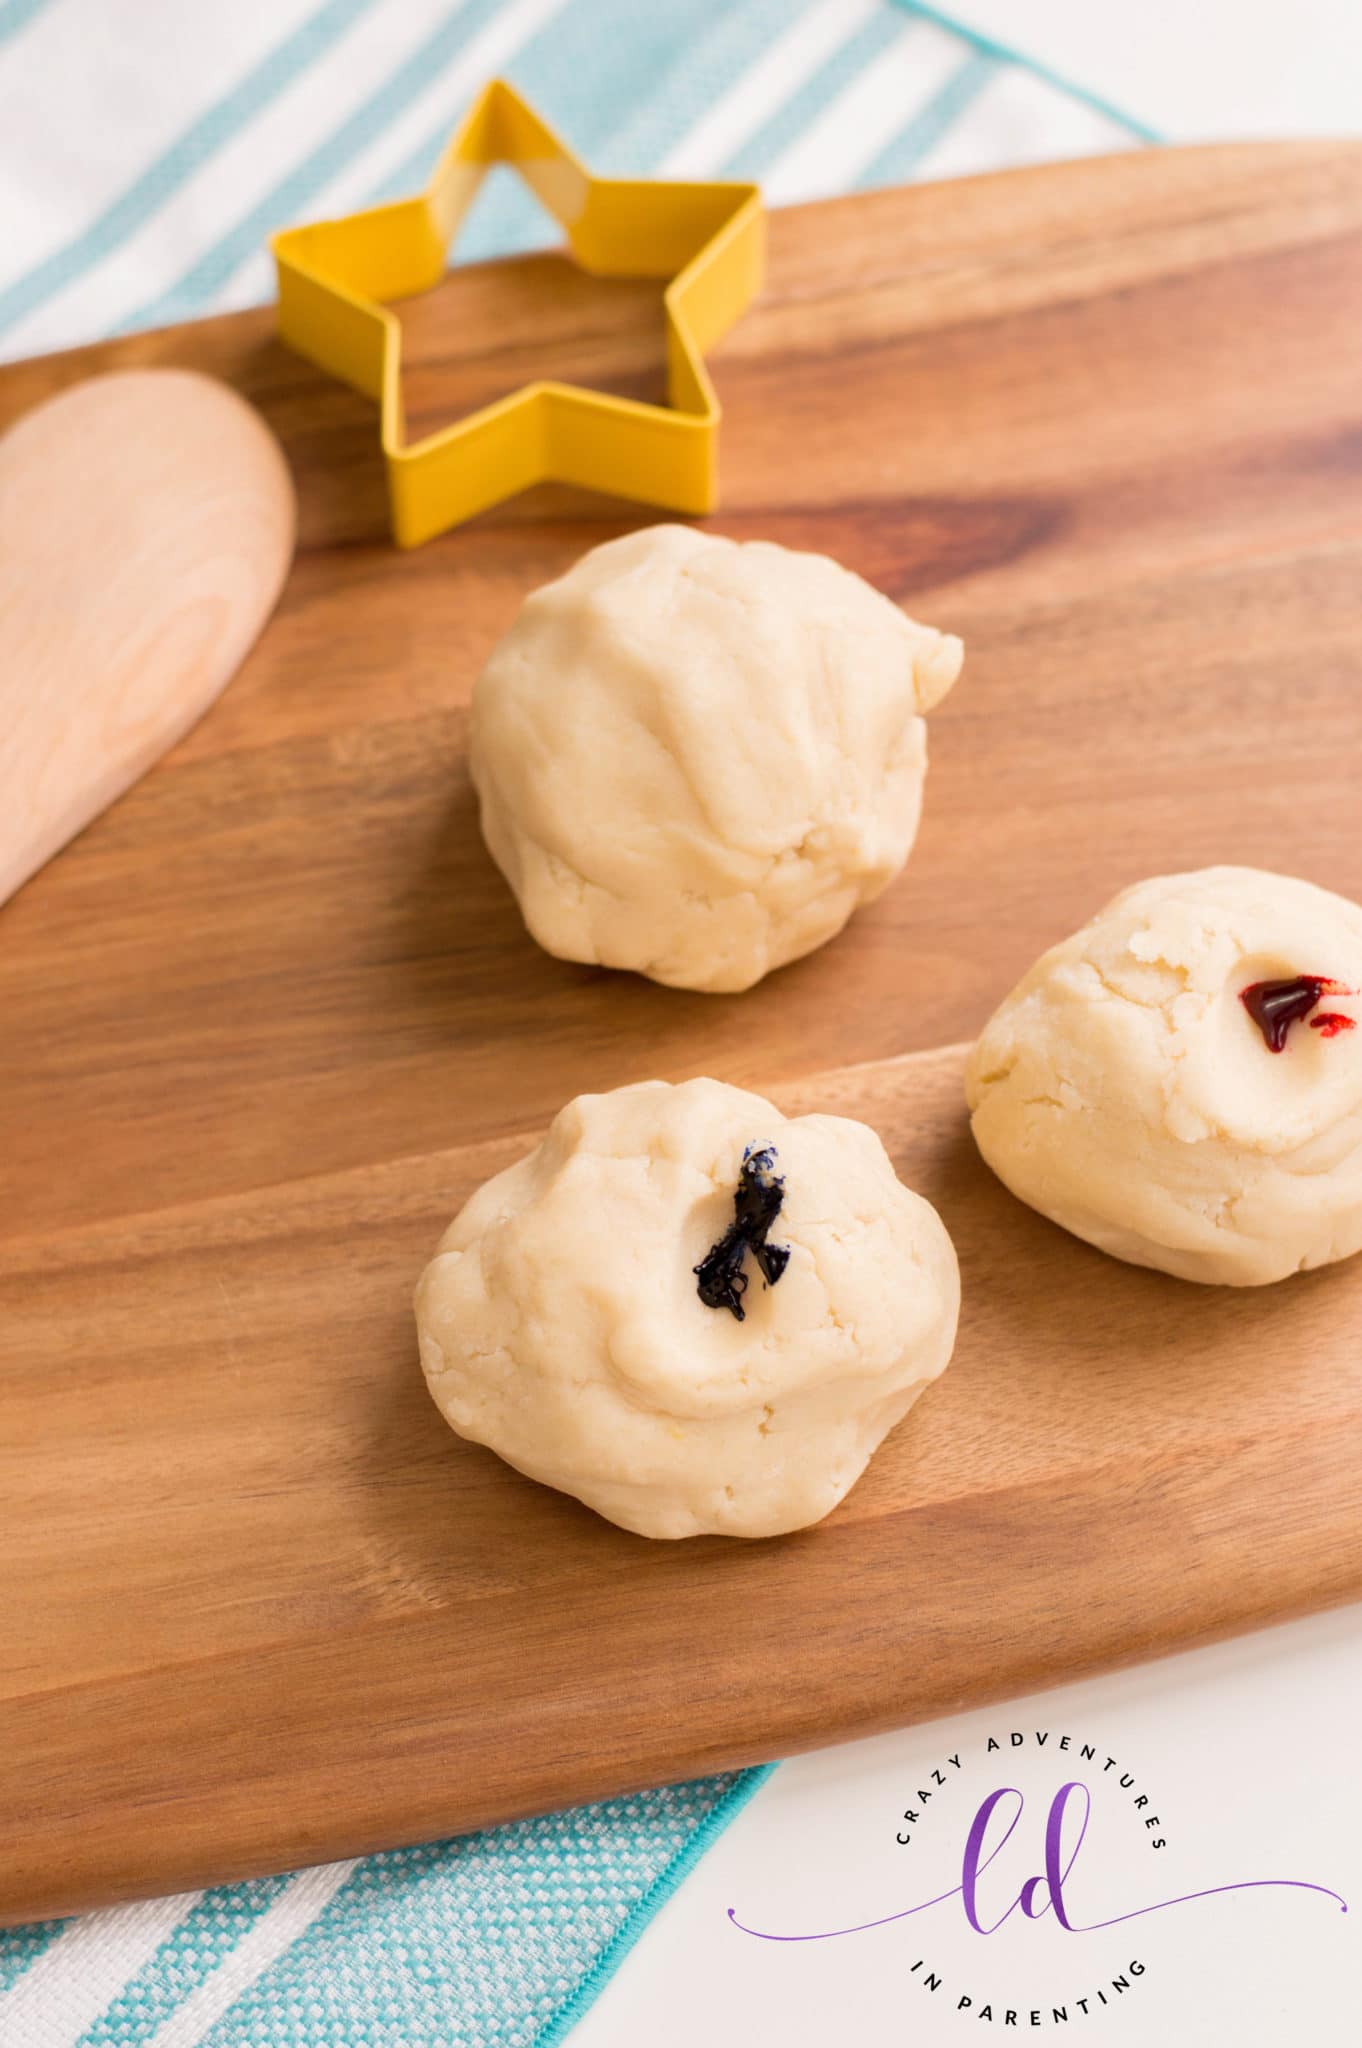 Separate dough into three parts to make Patriotic Sugar Cookies